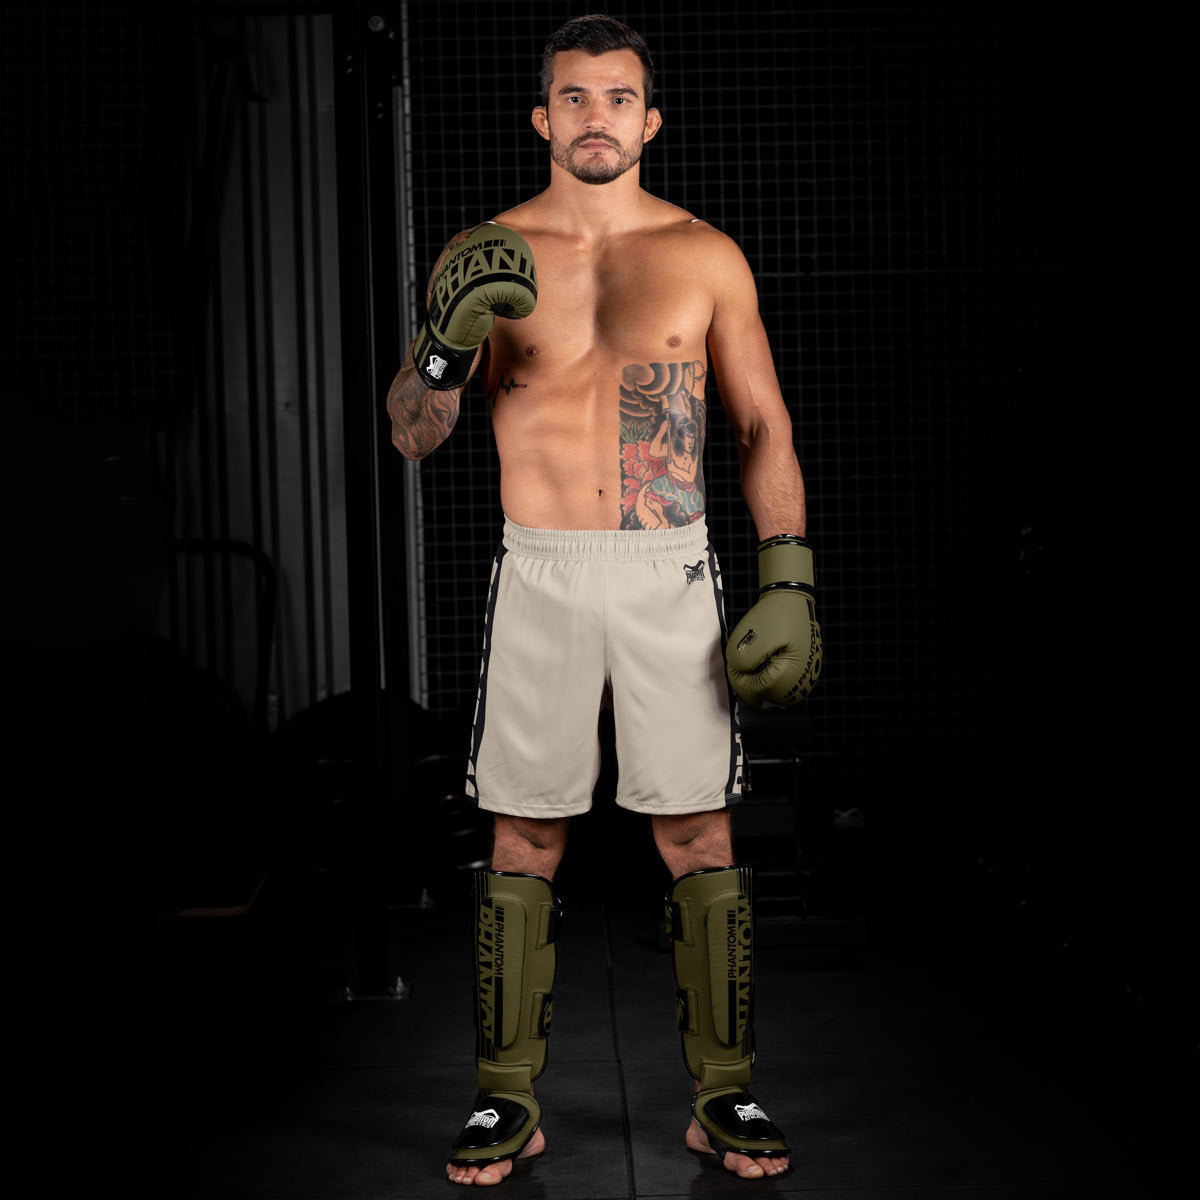 MMA Fighter im Gym mit der Army grünen Apex Fight Collection bestehend aus Boxhandschuhen, Hybrid Schienbeinschonern und Apex MMA Fightshorts.